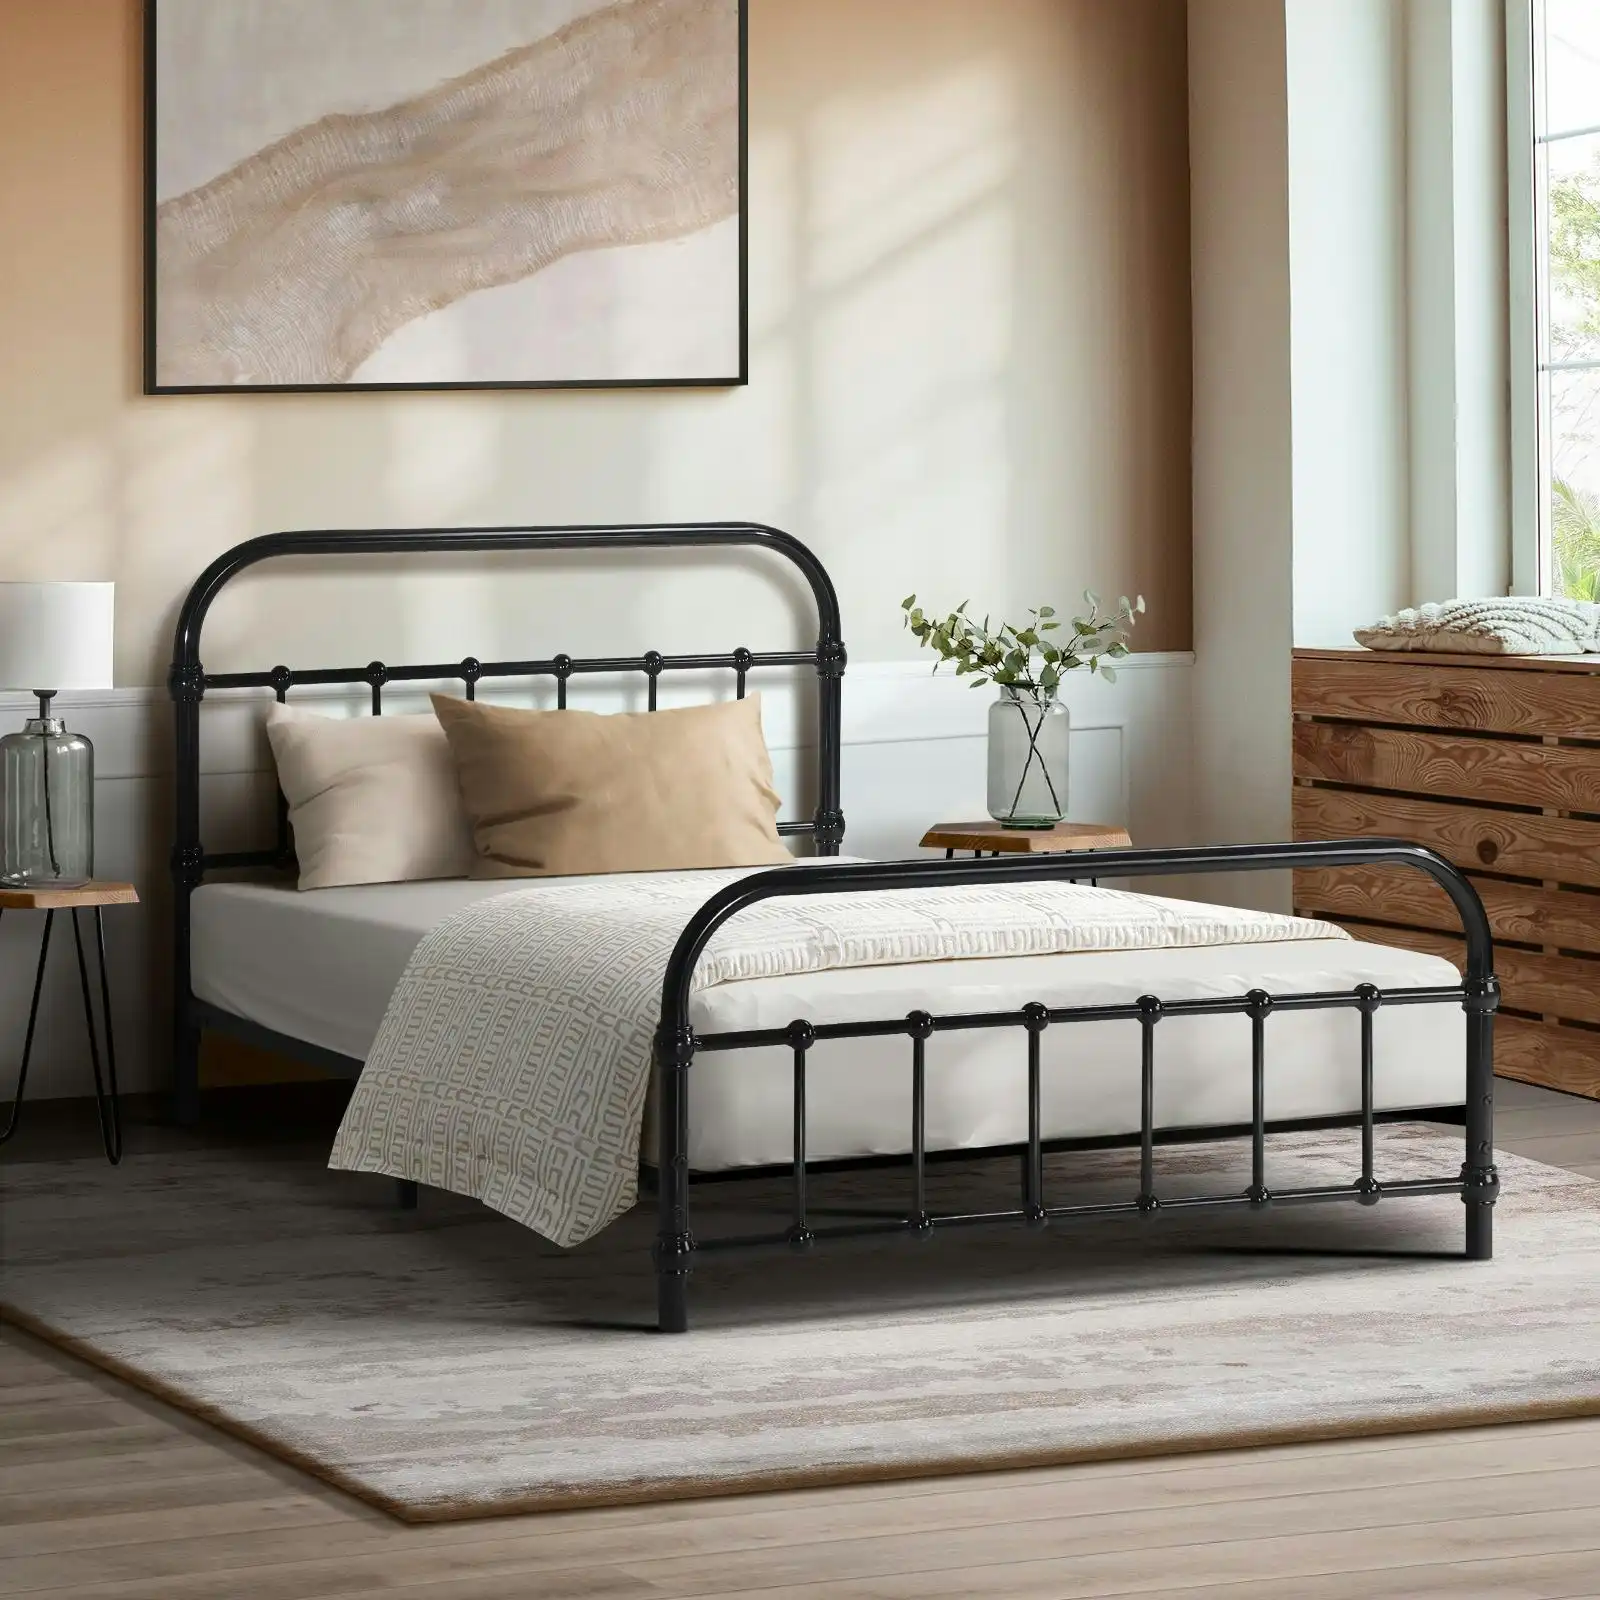 Oikiture Metal Bed Frame King Single Size Bed Base Platform